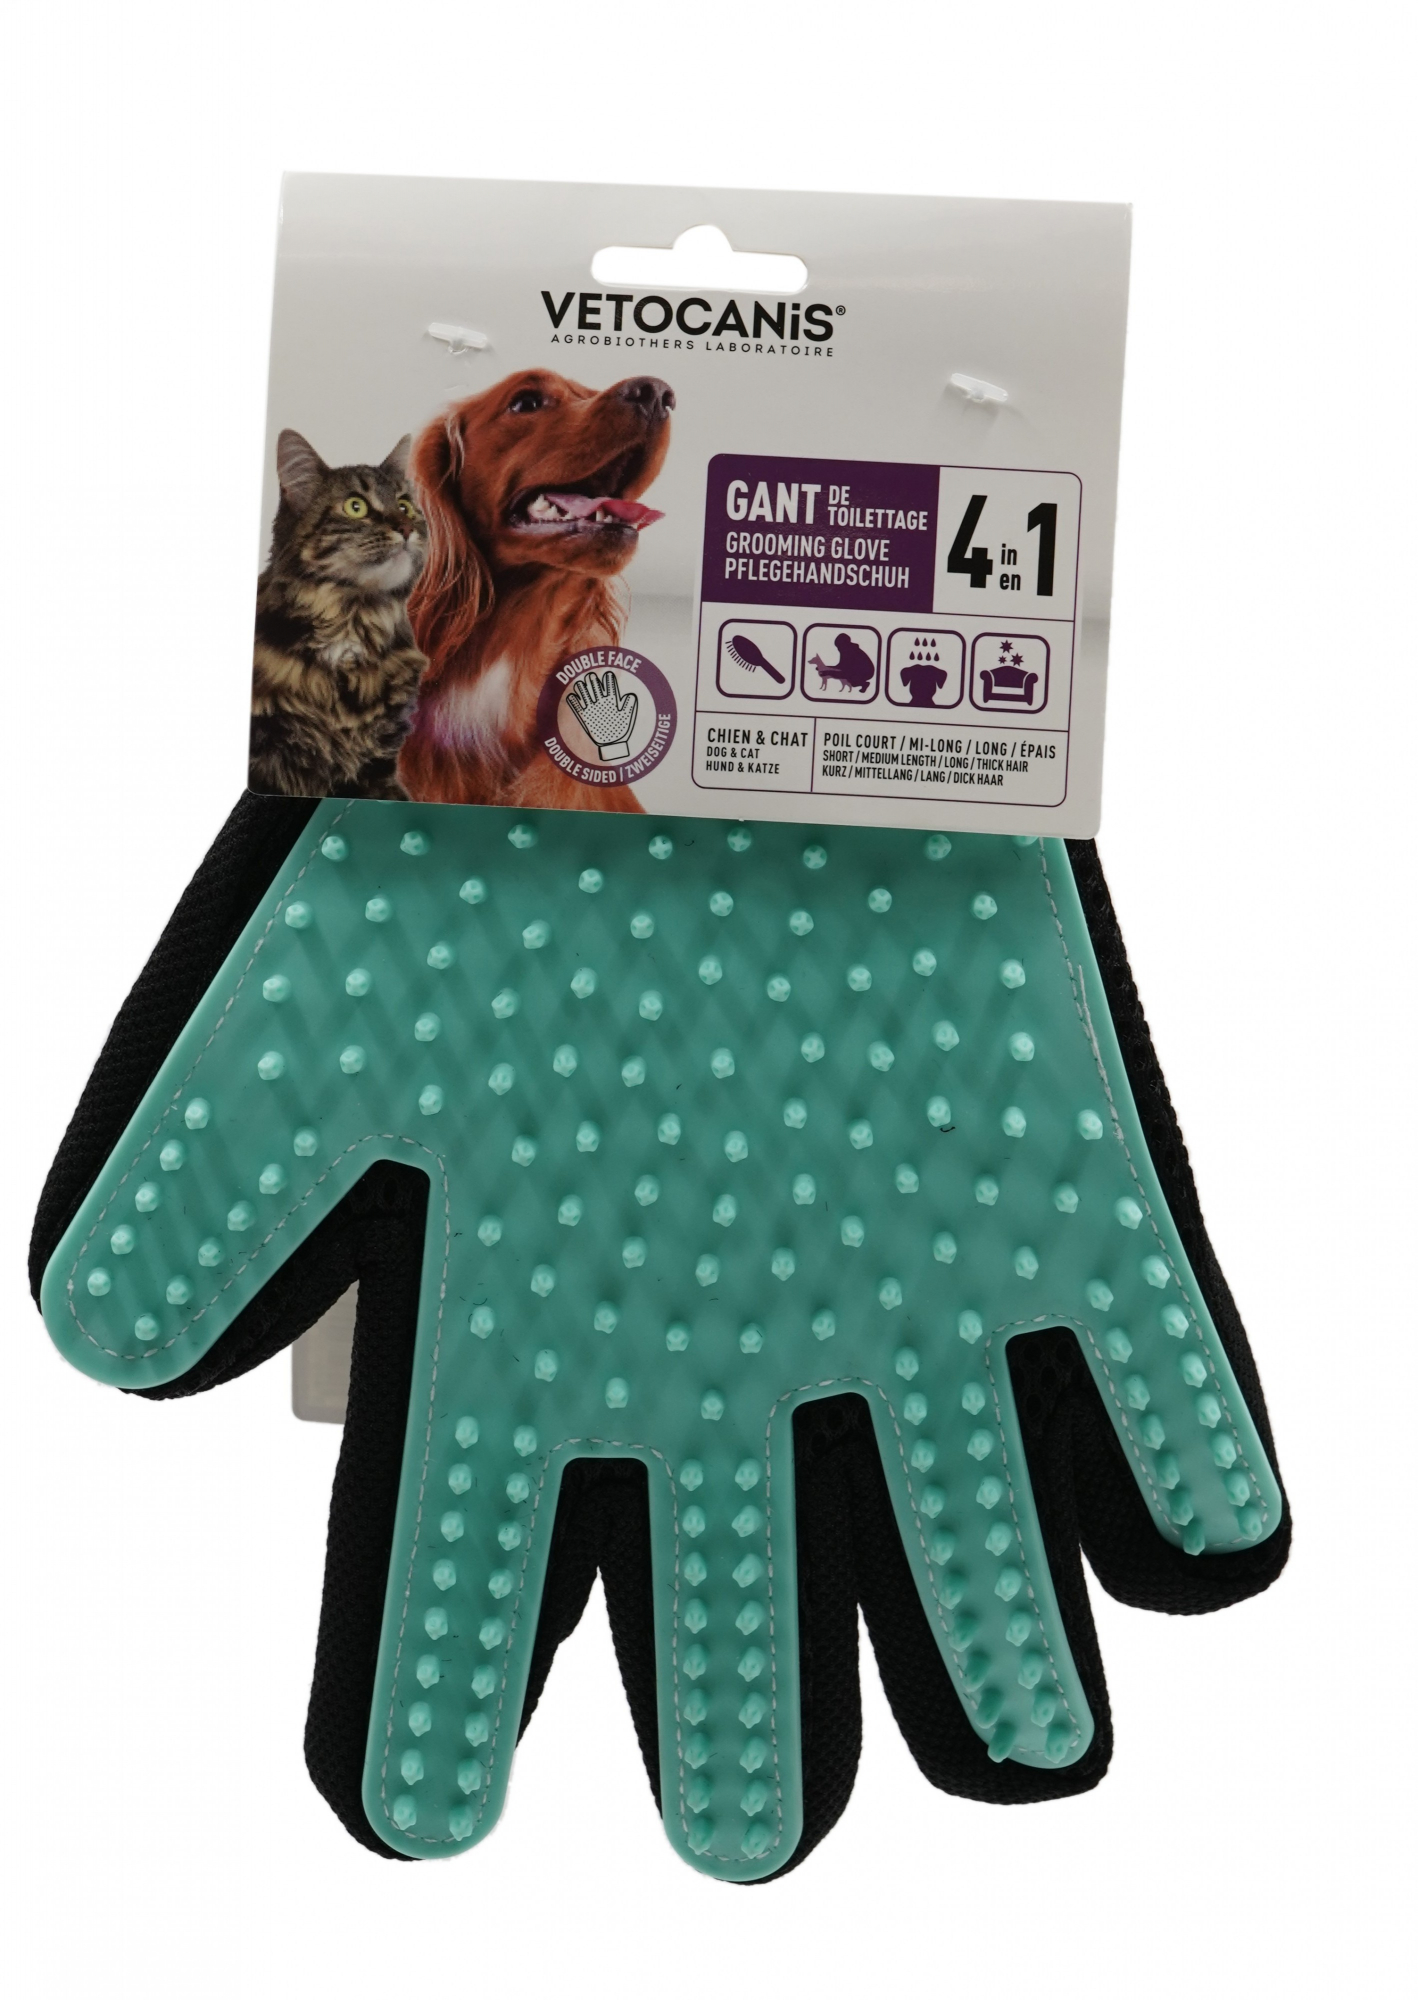 VETOCANIS 4 in 1 Silikon-Pflegehandschuh für Hund und Katze